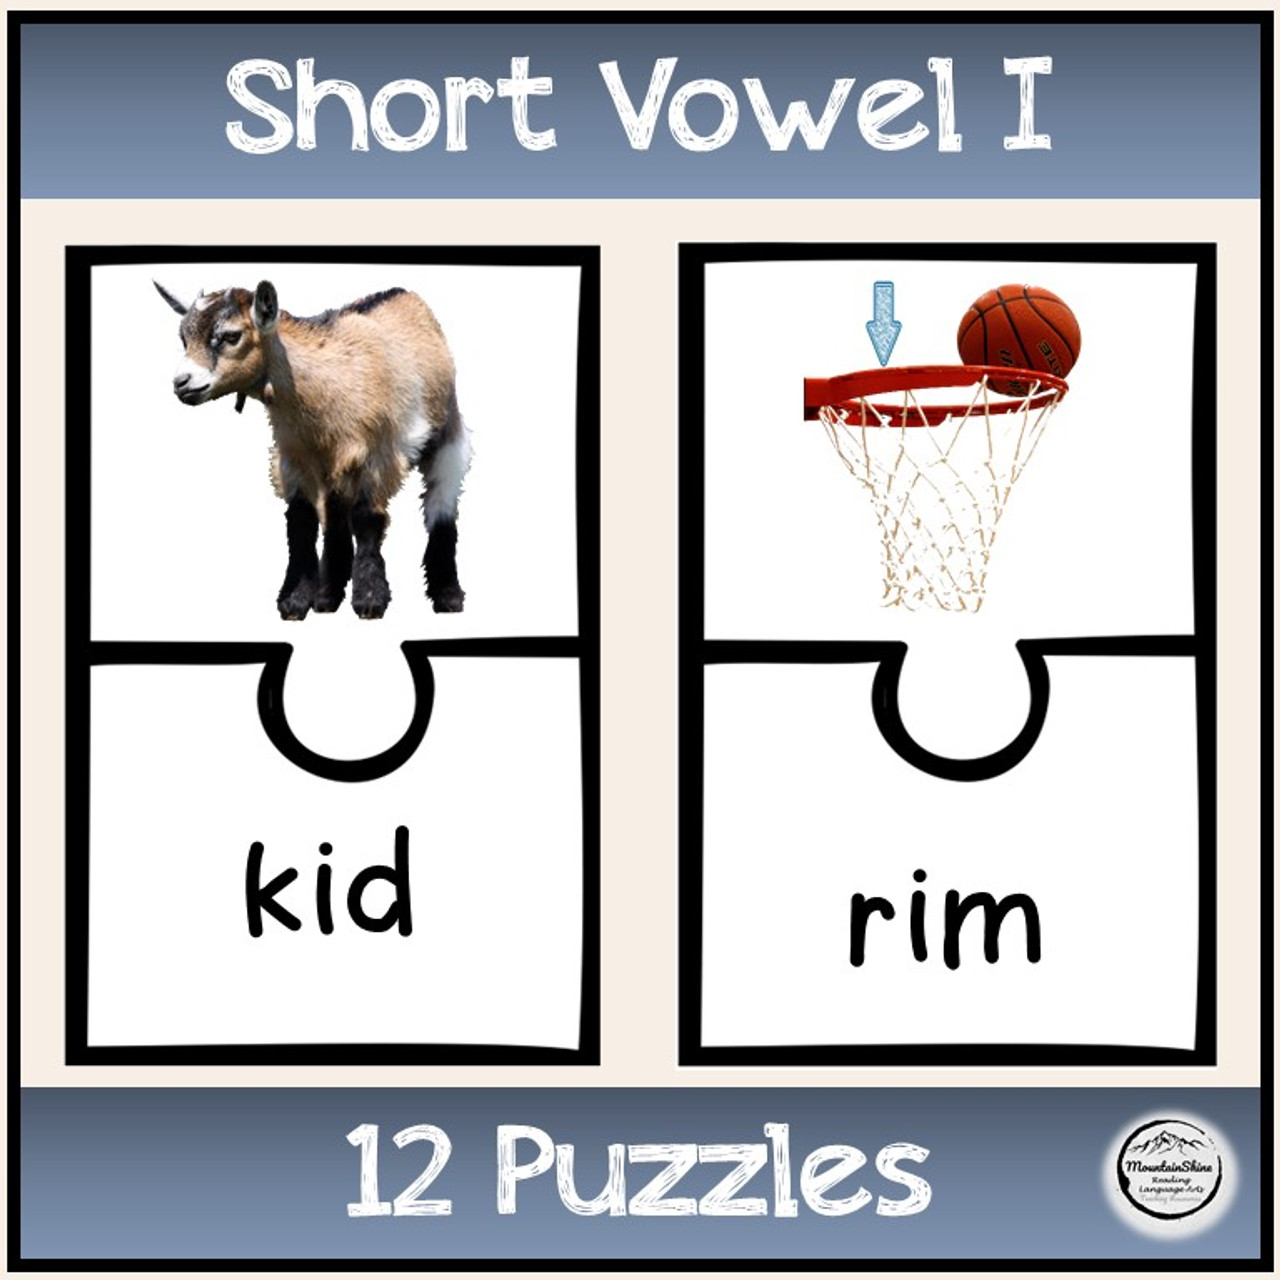 CVC Short Vowel I Bundle Make-A-Word, Puzzles, Worksheets & Flashcards